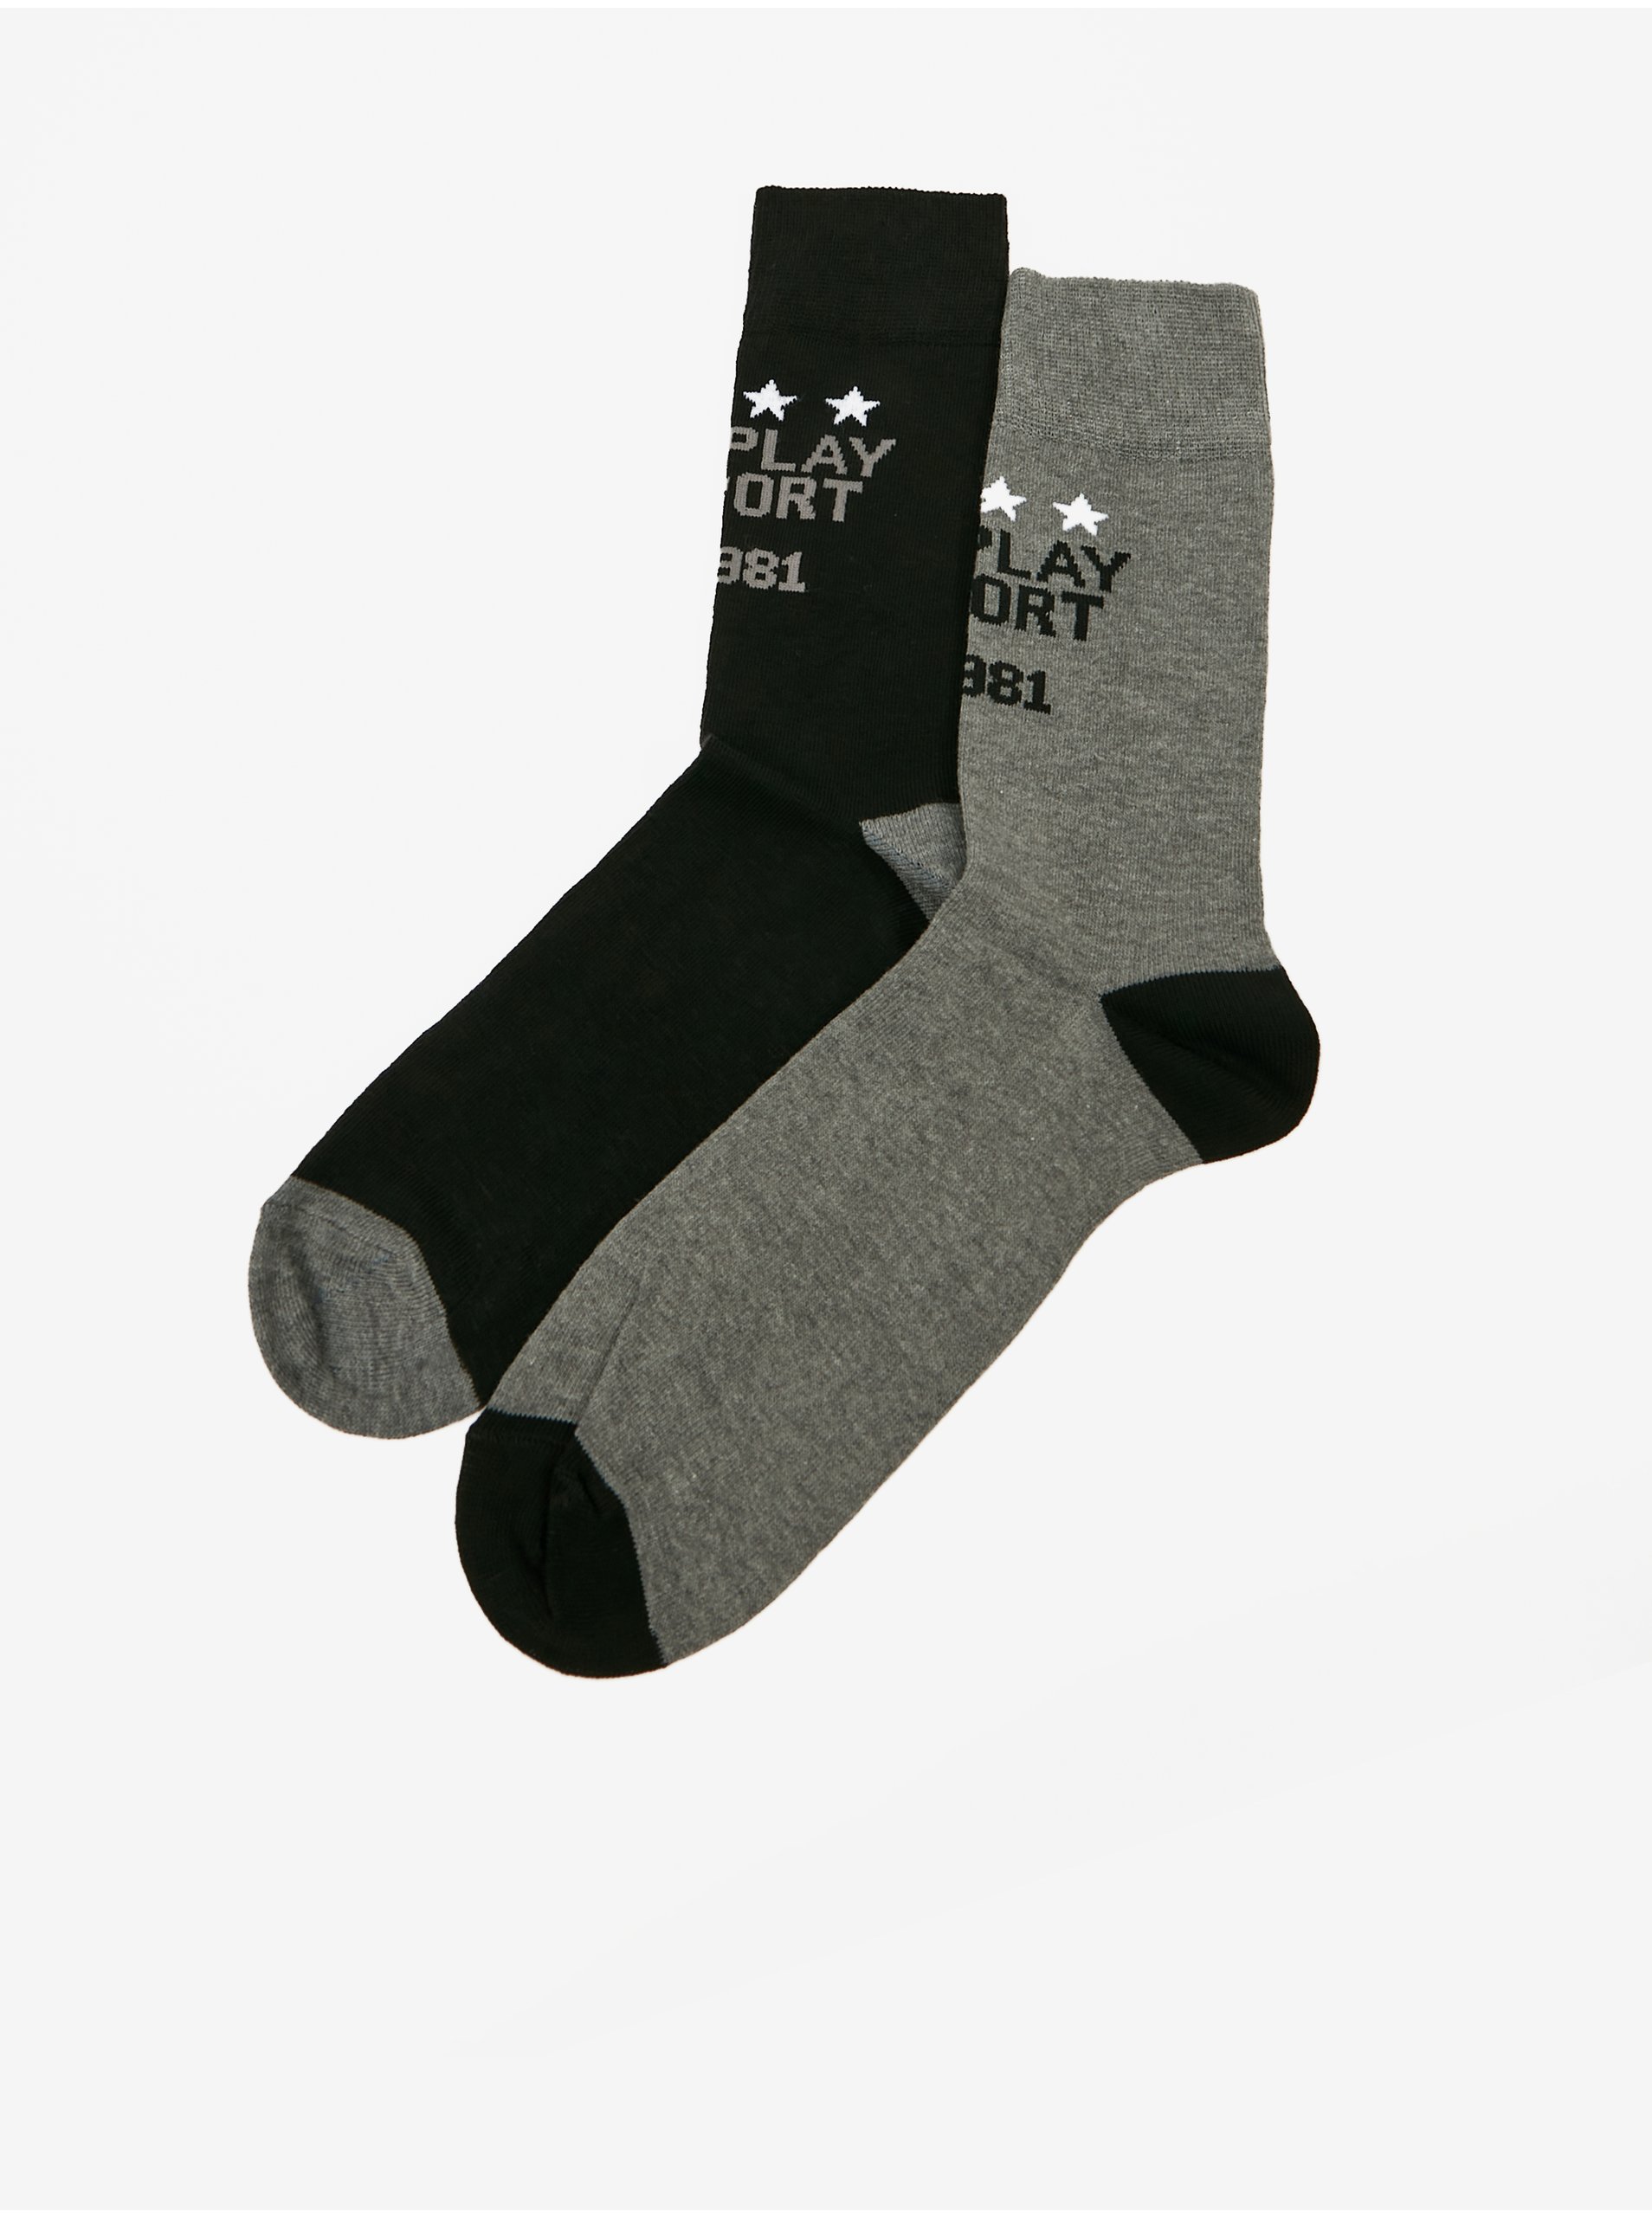 E-shop Súprava dvoch párov pánskych ponožiek v šedej a čiernej farbe Replay